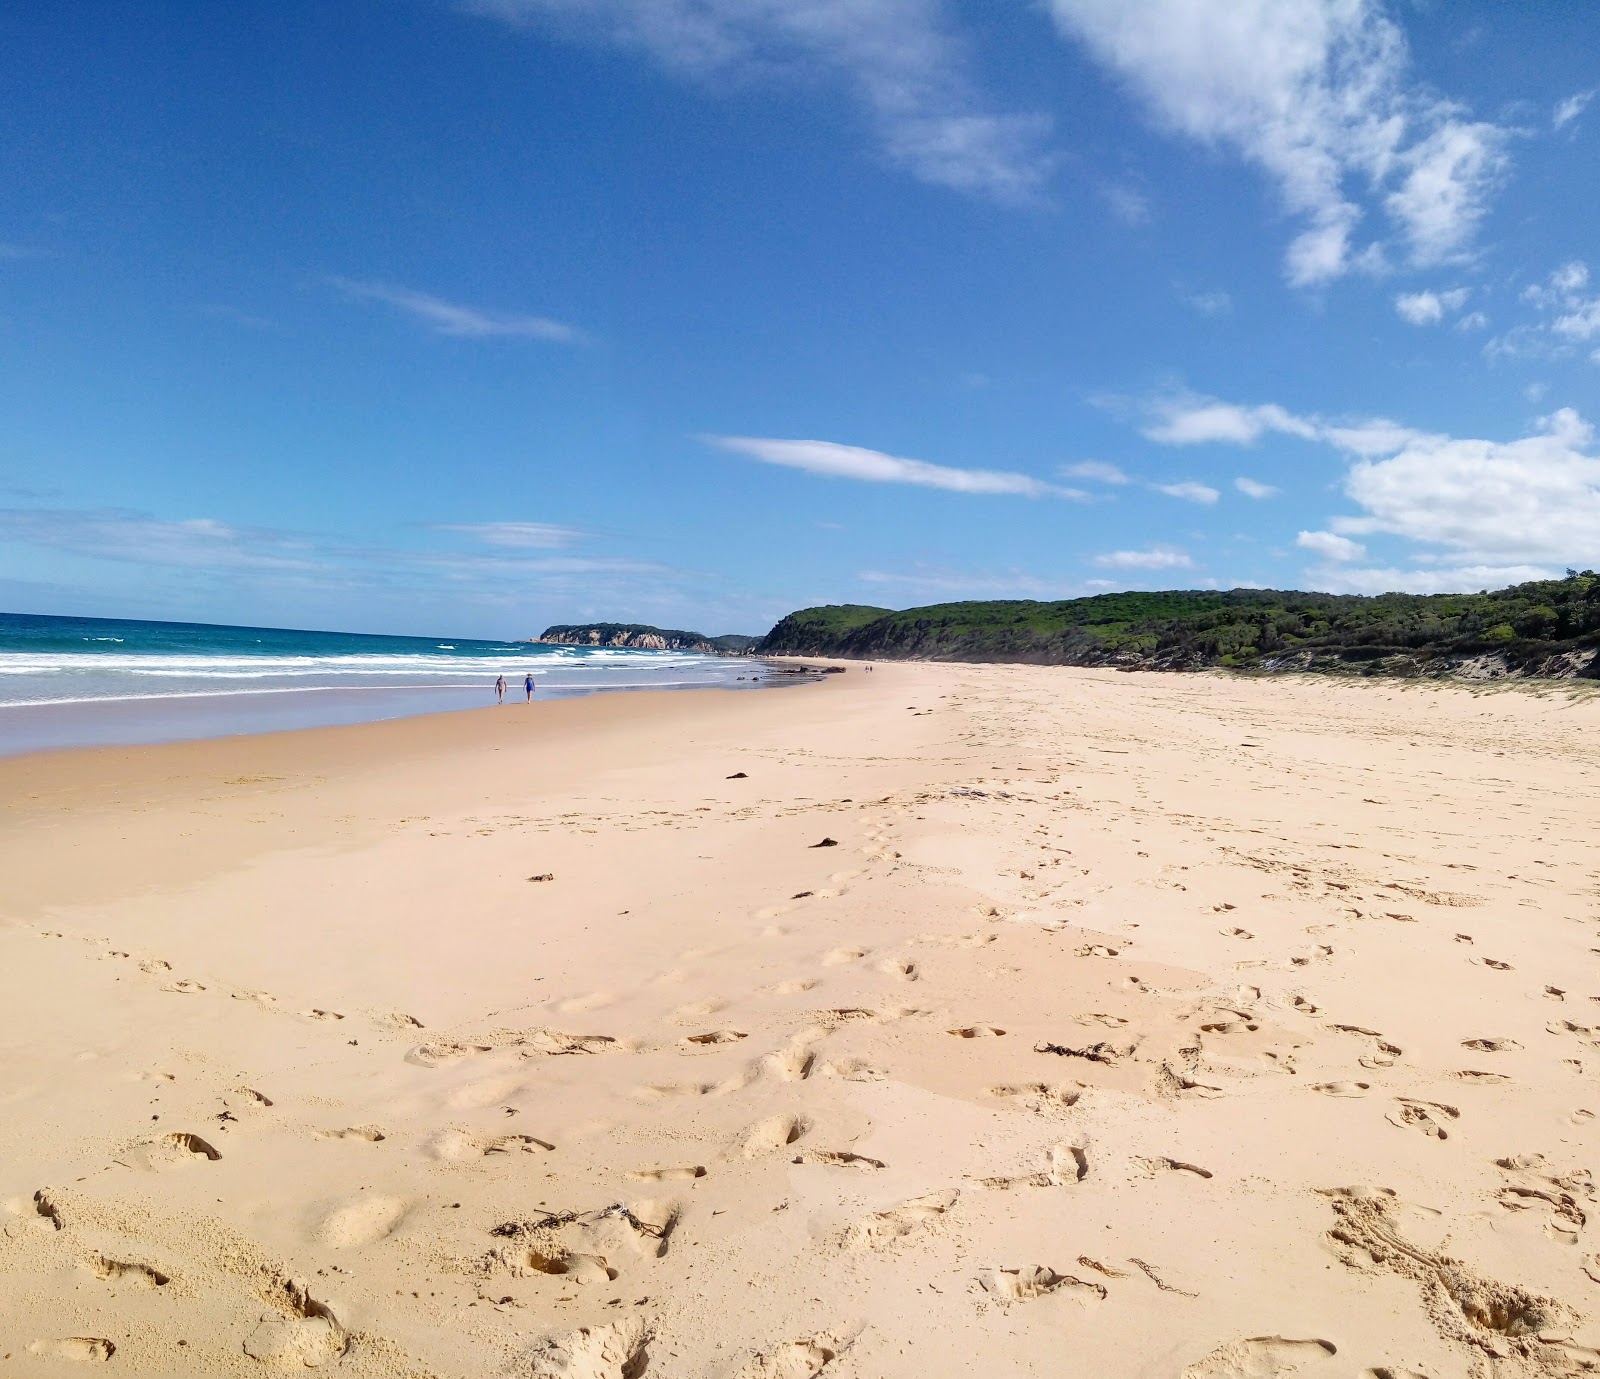 Foto di Gillards Beach ubicato in zona naturale